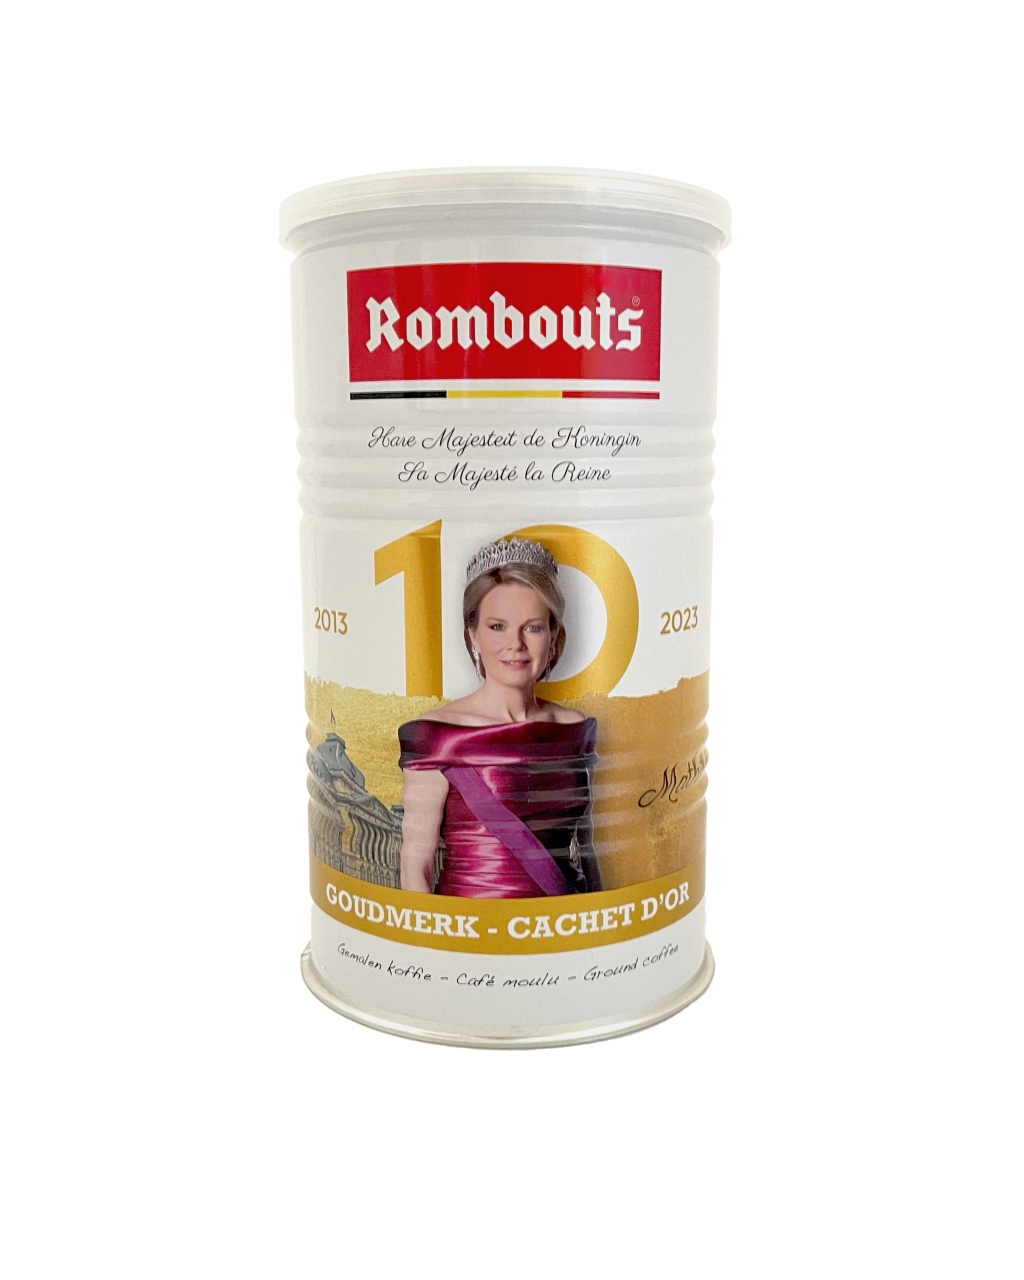 Speciale editie metalen blik van de RomboutsKoninklijke Goudmerk-koffie, versierd met een afbeelding van Koningin Mathilde ter ere van haar tienjarig koningschap.